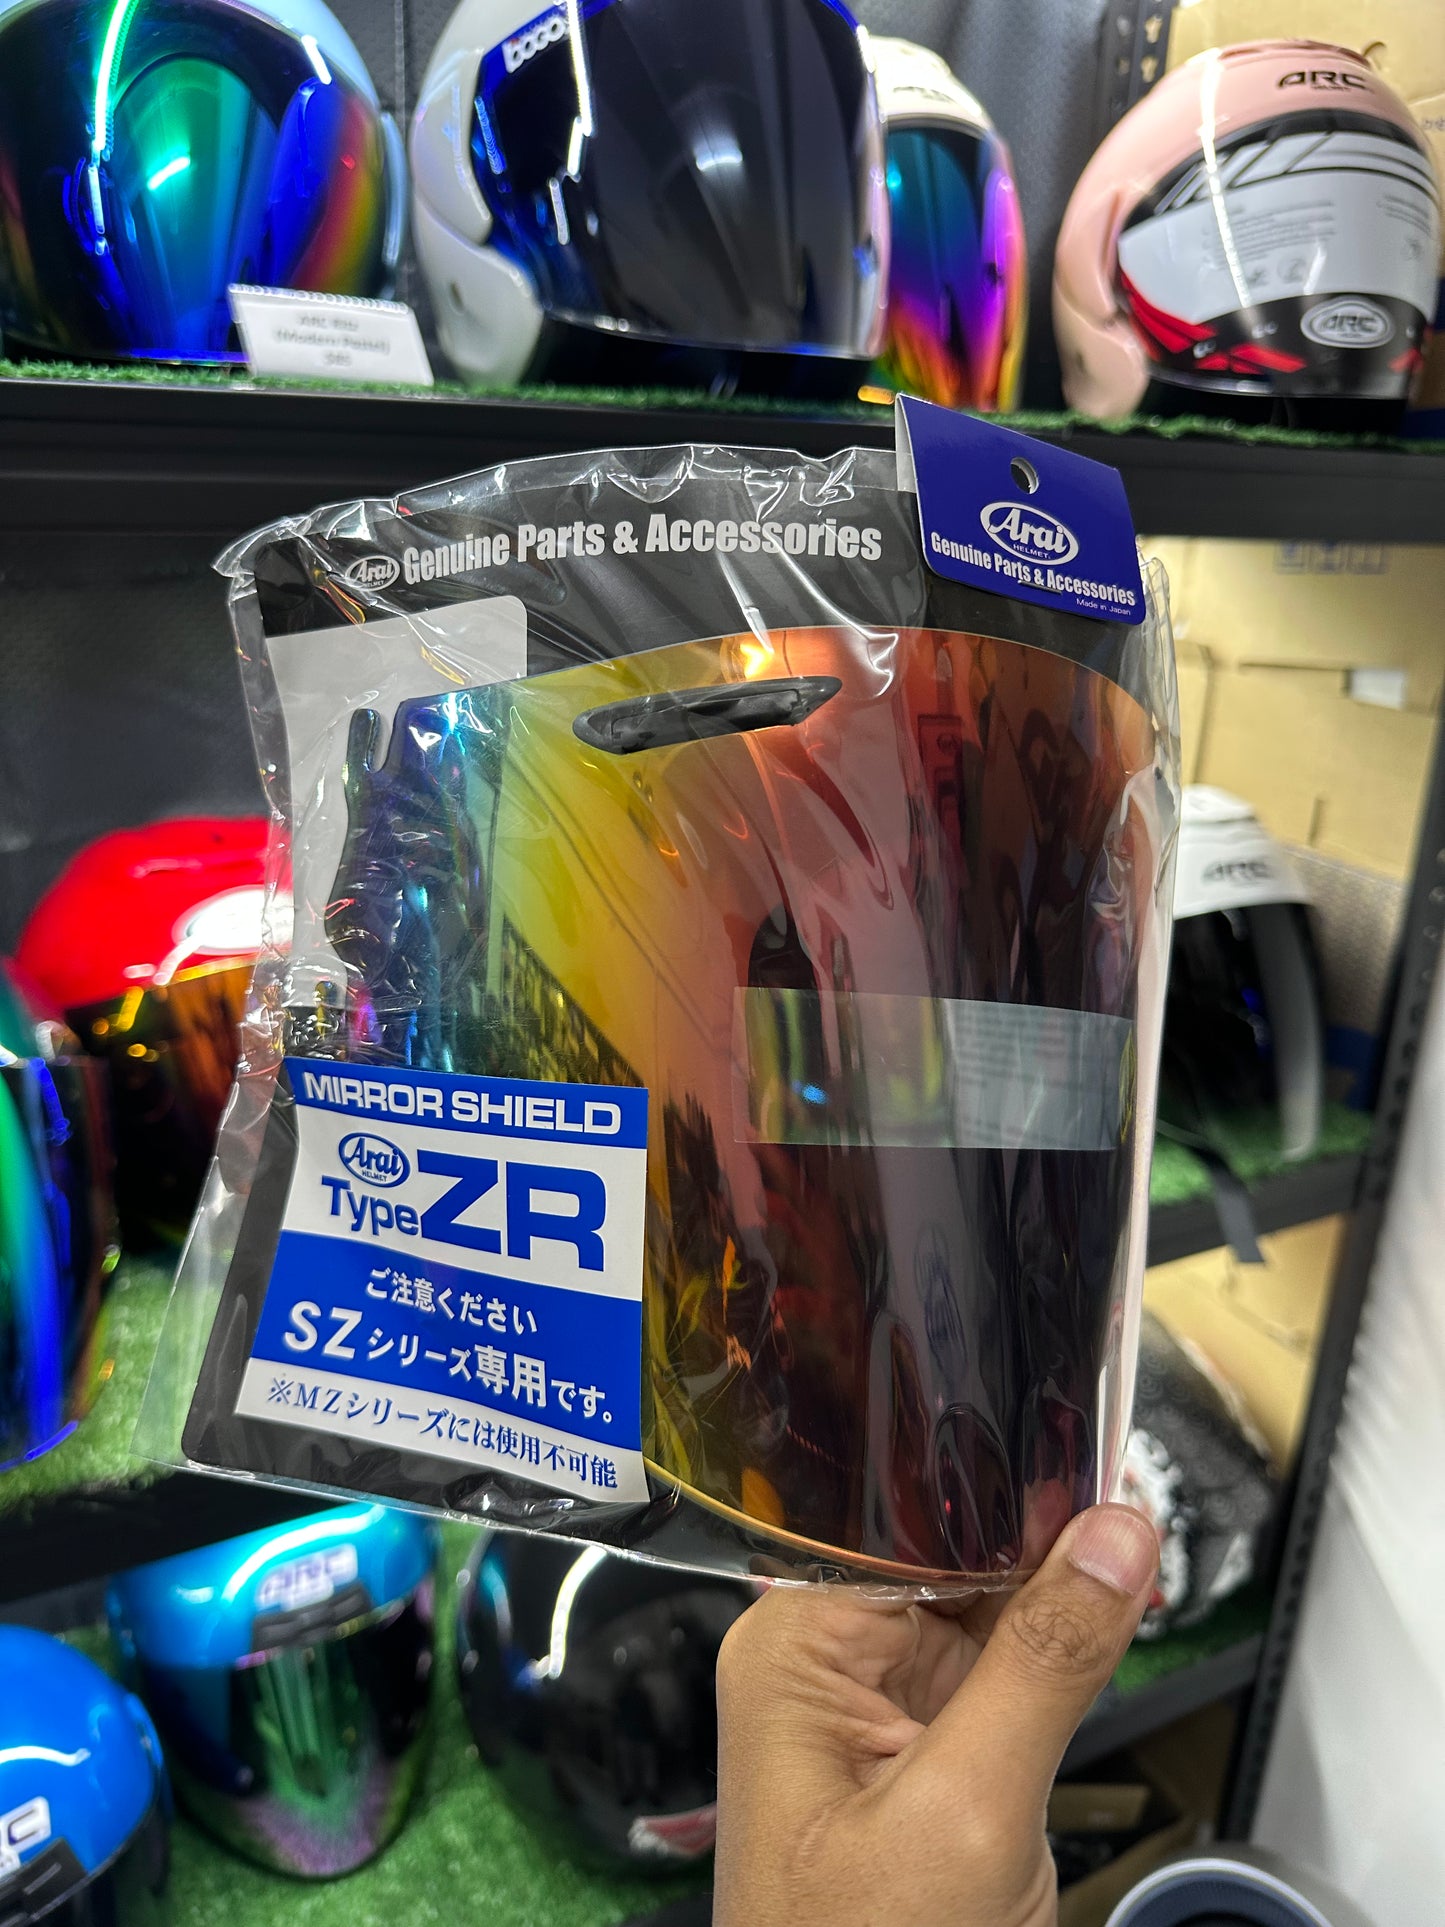 Arai Type ZR visor